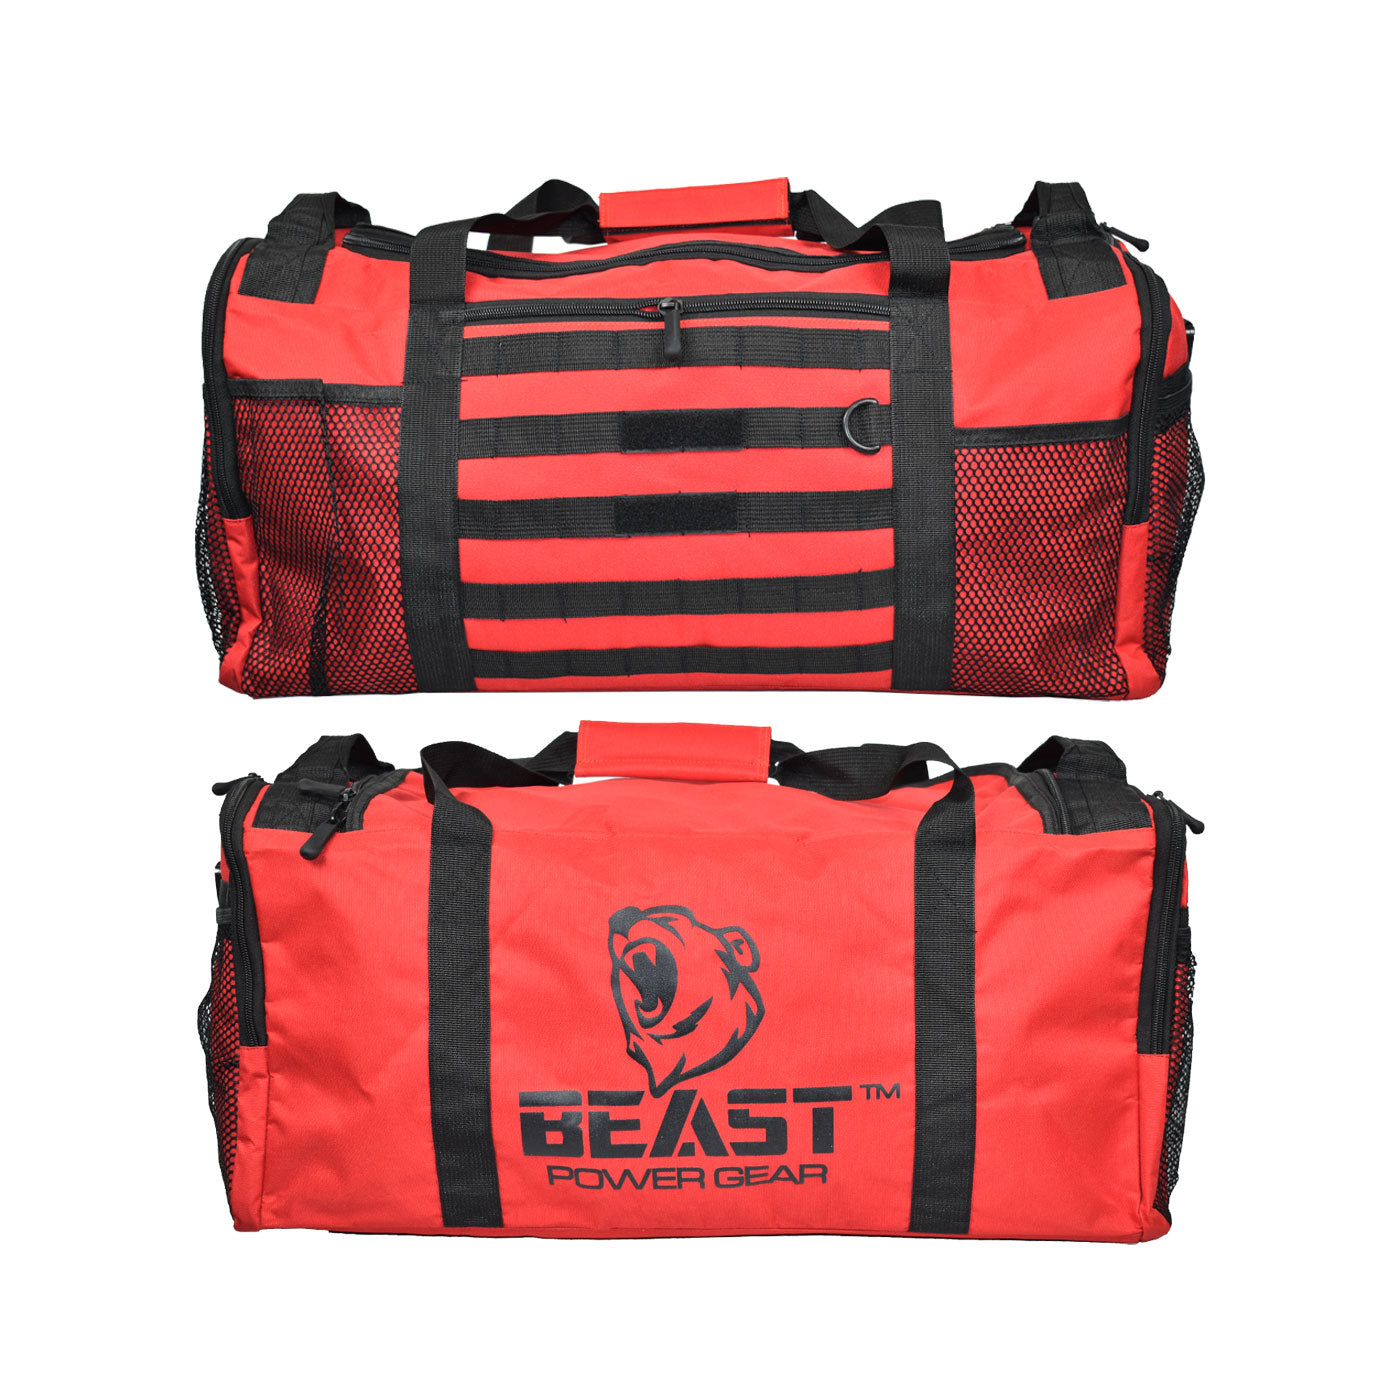 http://www.beastpowergear.com/cdn/shop/products/gym-bag-red-display.jpg?v=1651050925